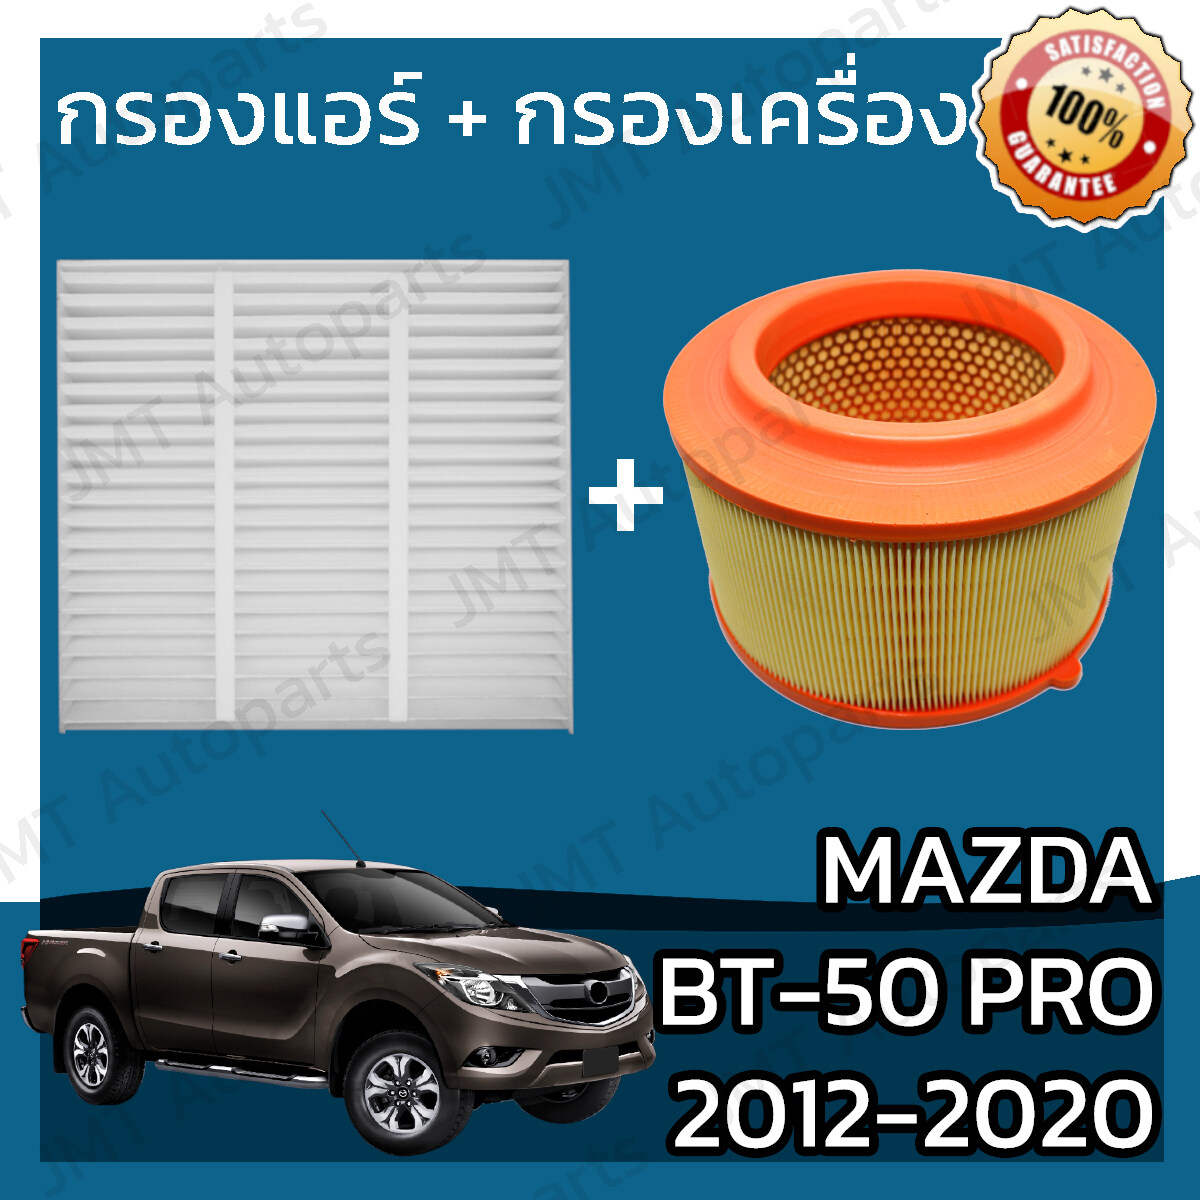 กรองแอร์ + กรองอากาศเครื่อง มาสด้า BT-50 โปร ปี 2012-2020 Mazda BT-50 Pro A/C Car Filter + Engine Air Filter มาสดา BT50 Pro บีที50 โปร